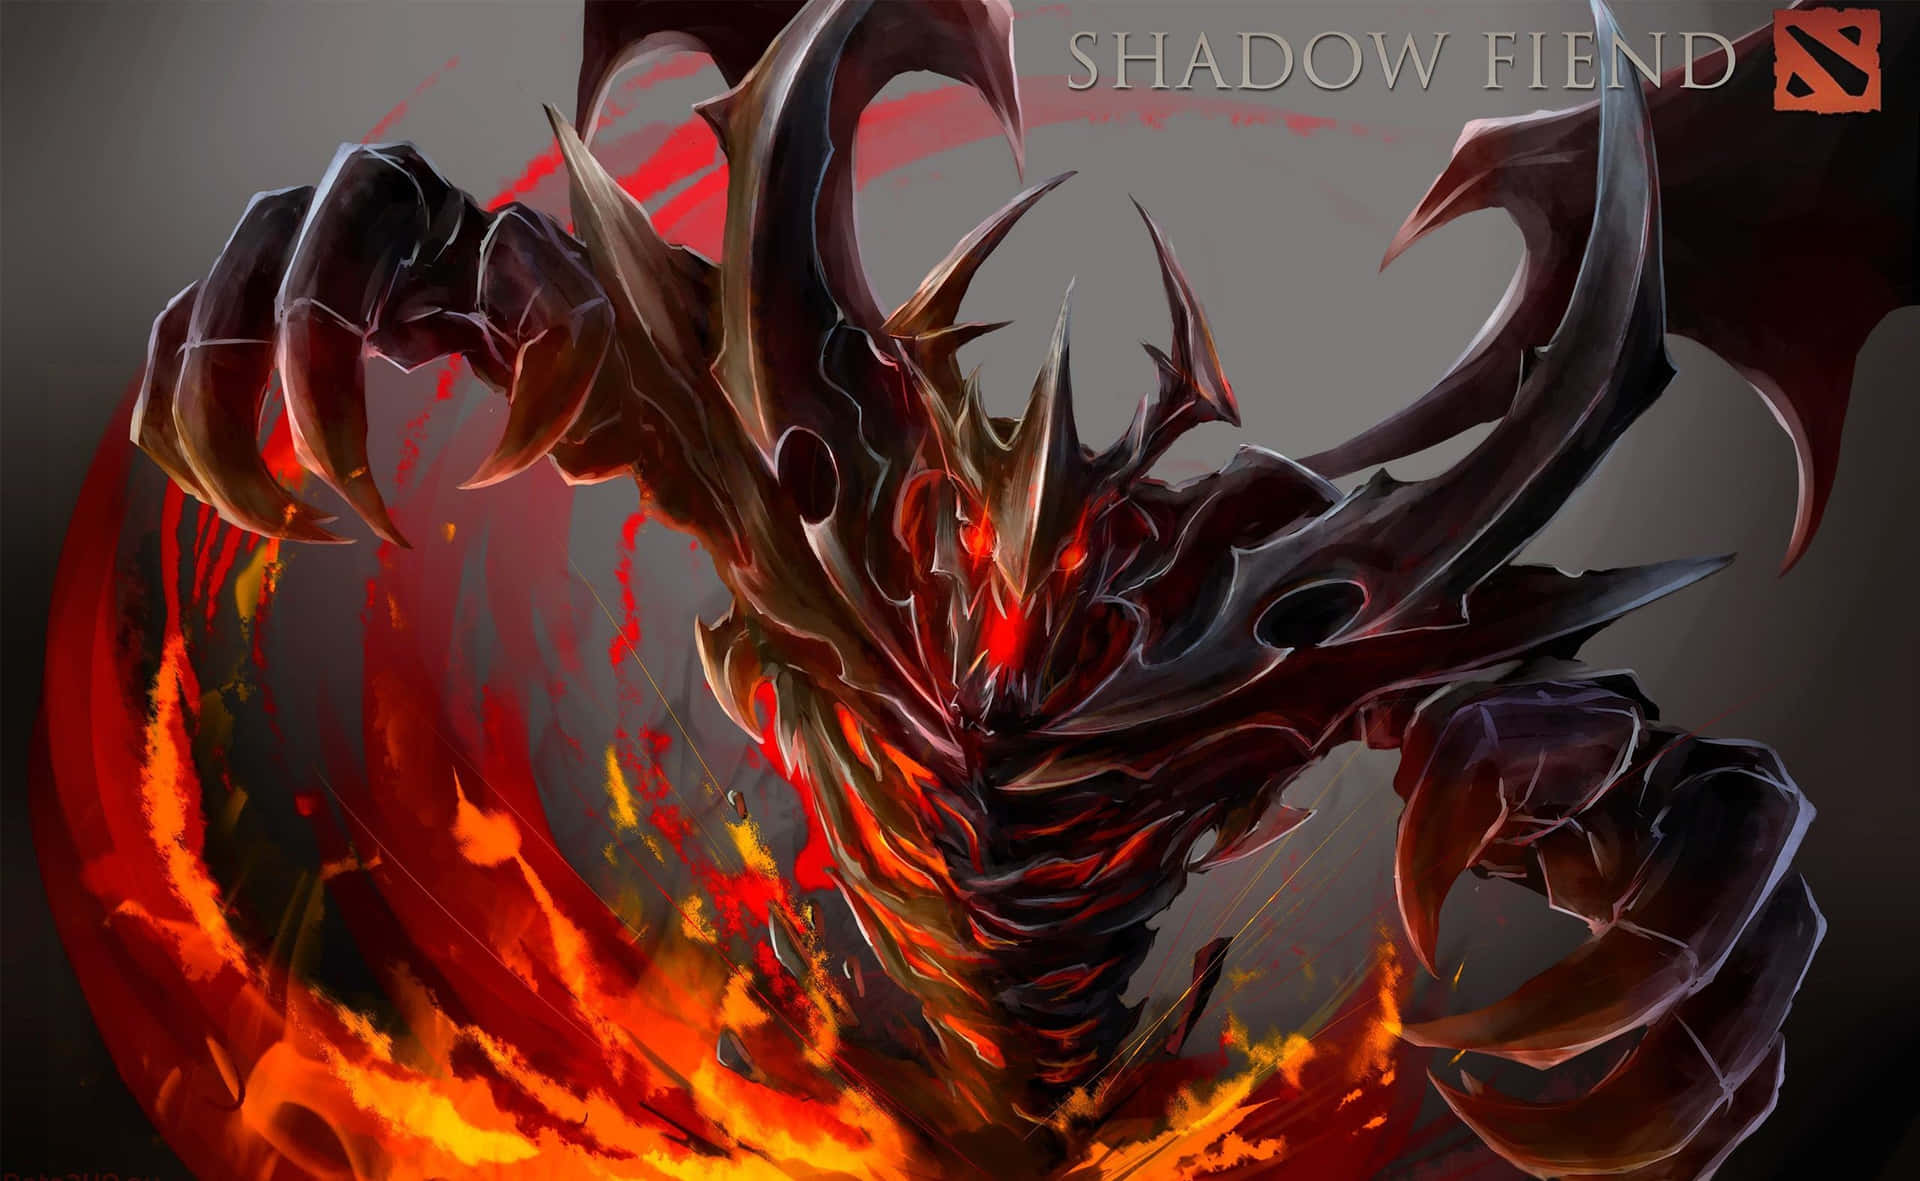 Shadow Fiend Unleashing His Power in a Fierce Battle Wallpaper